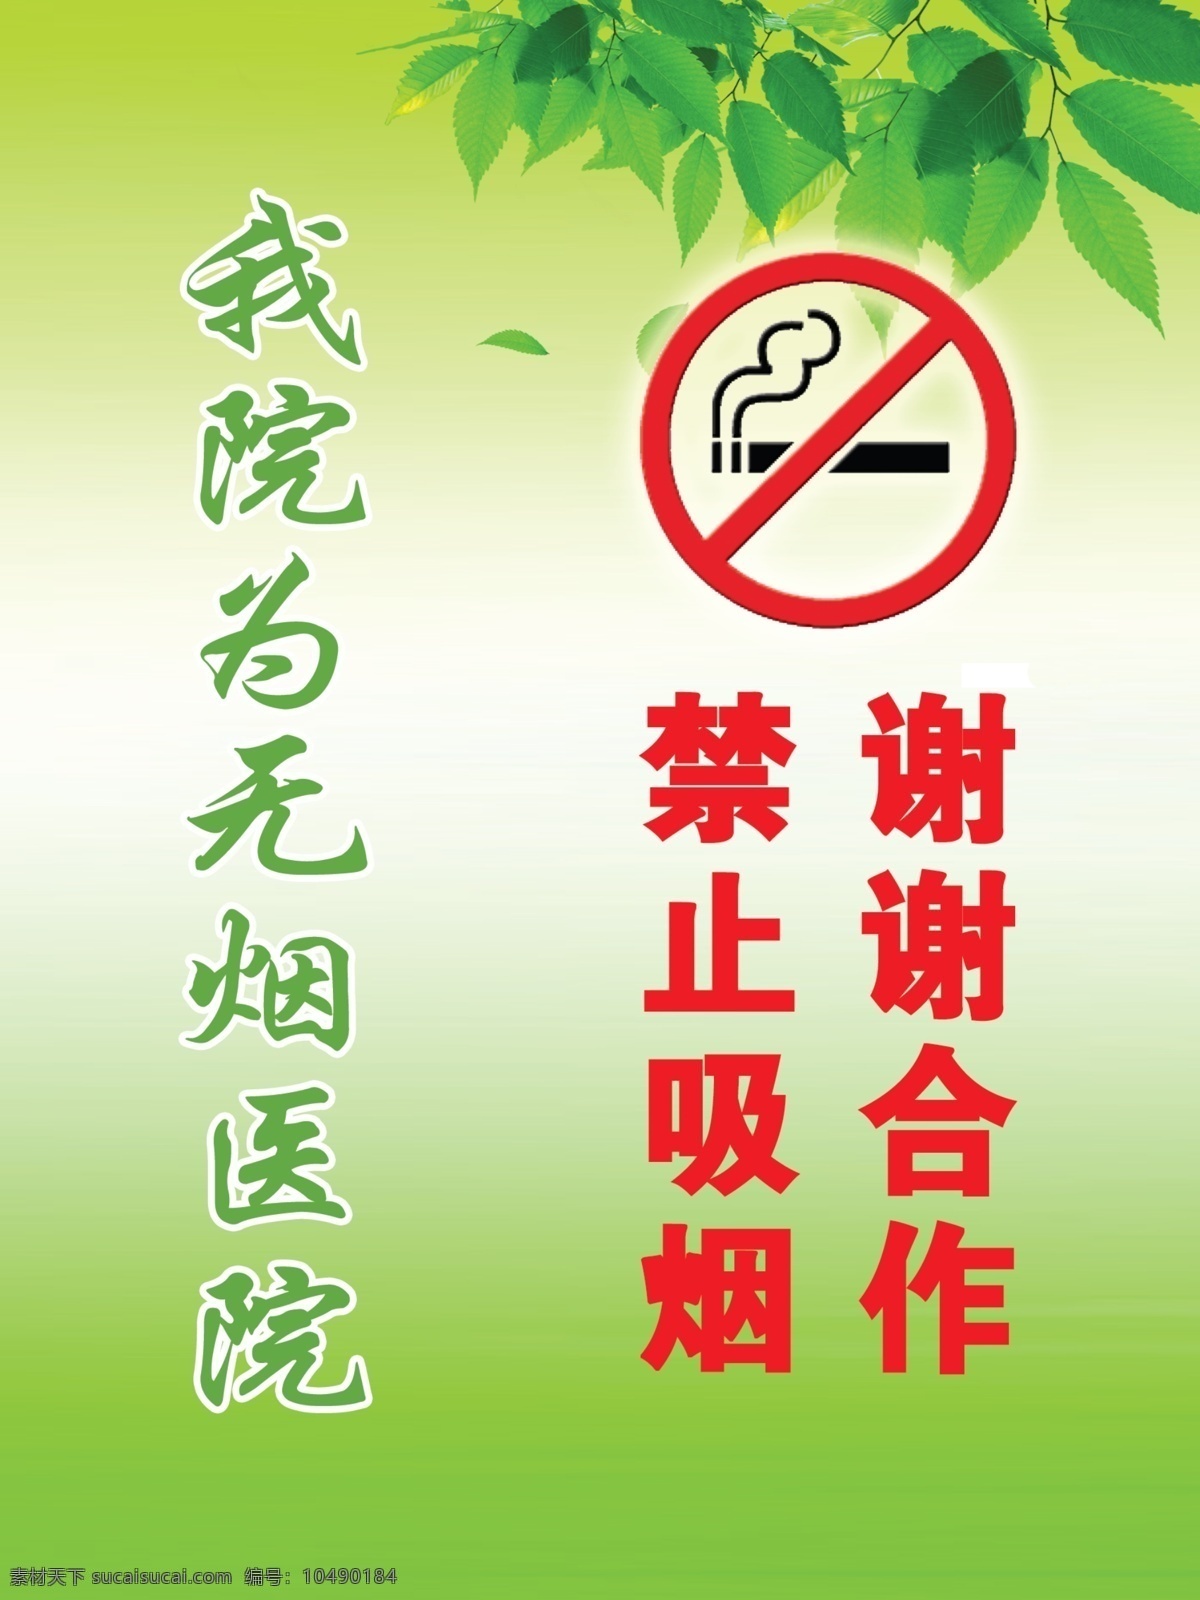 无烟医院 禁止吸烟 绿色背景 树叶 谢谢合作 背景素材 分层 源文件